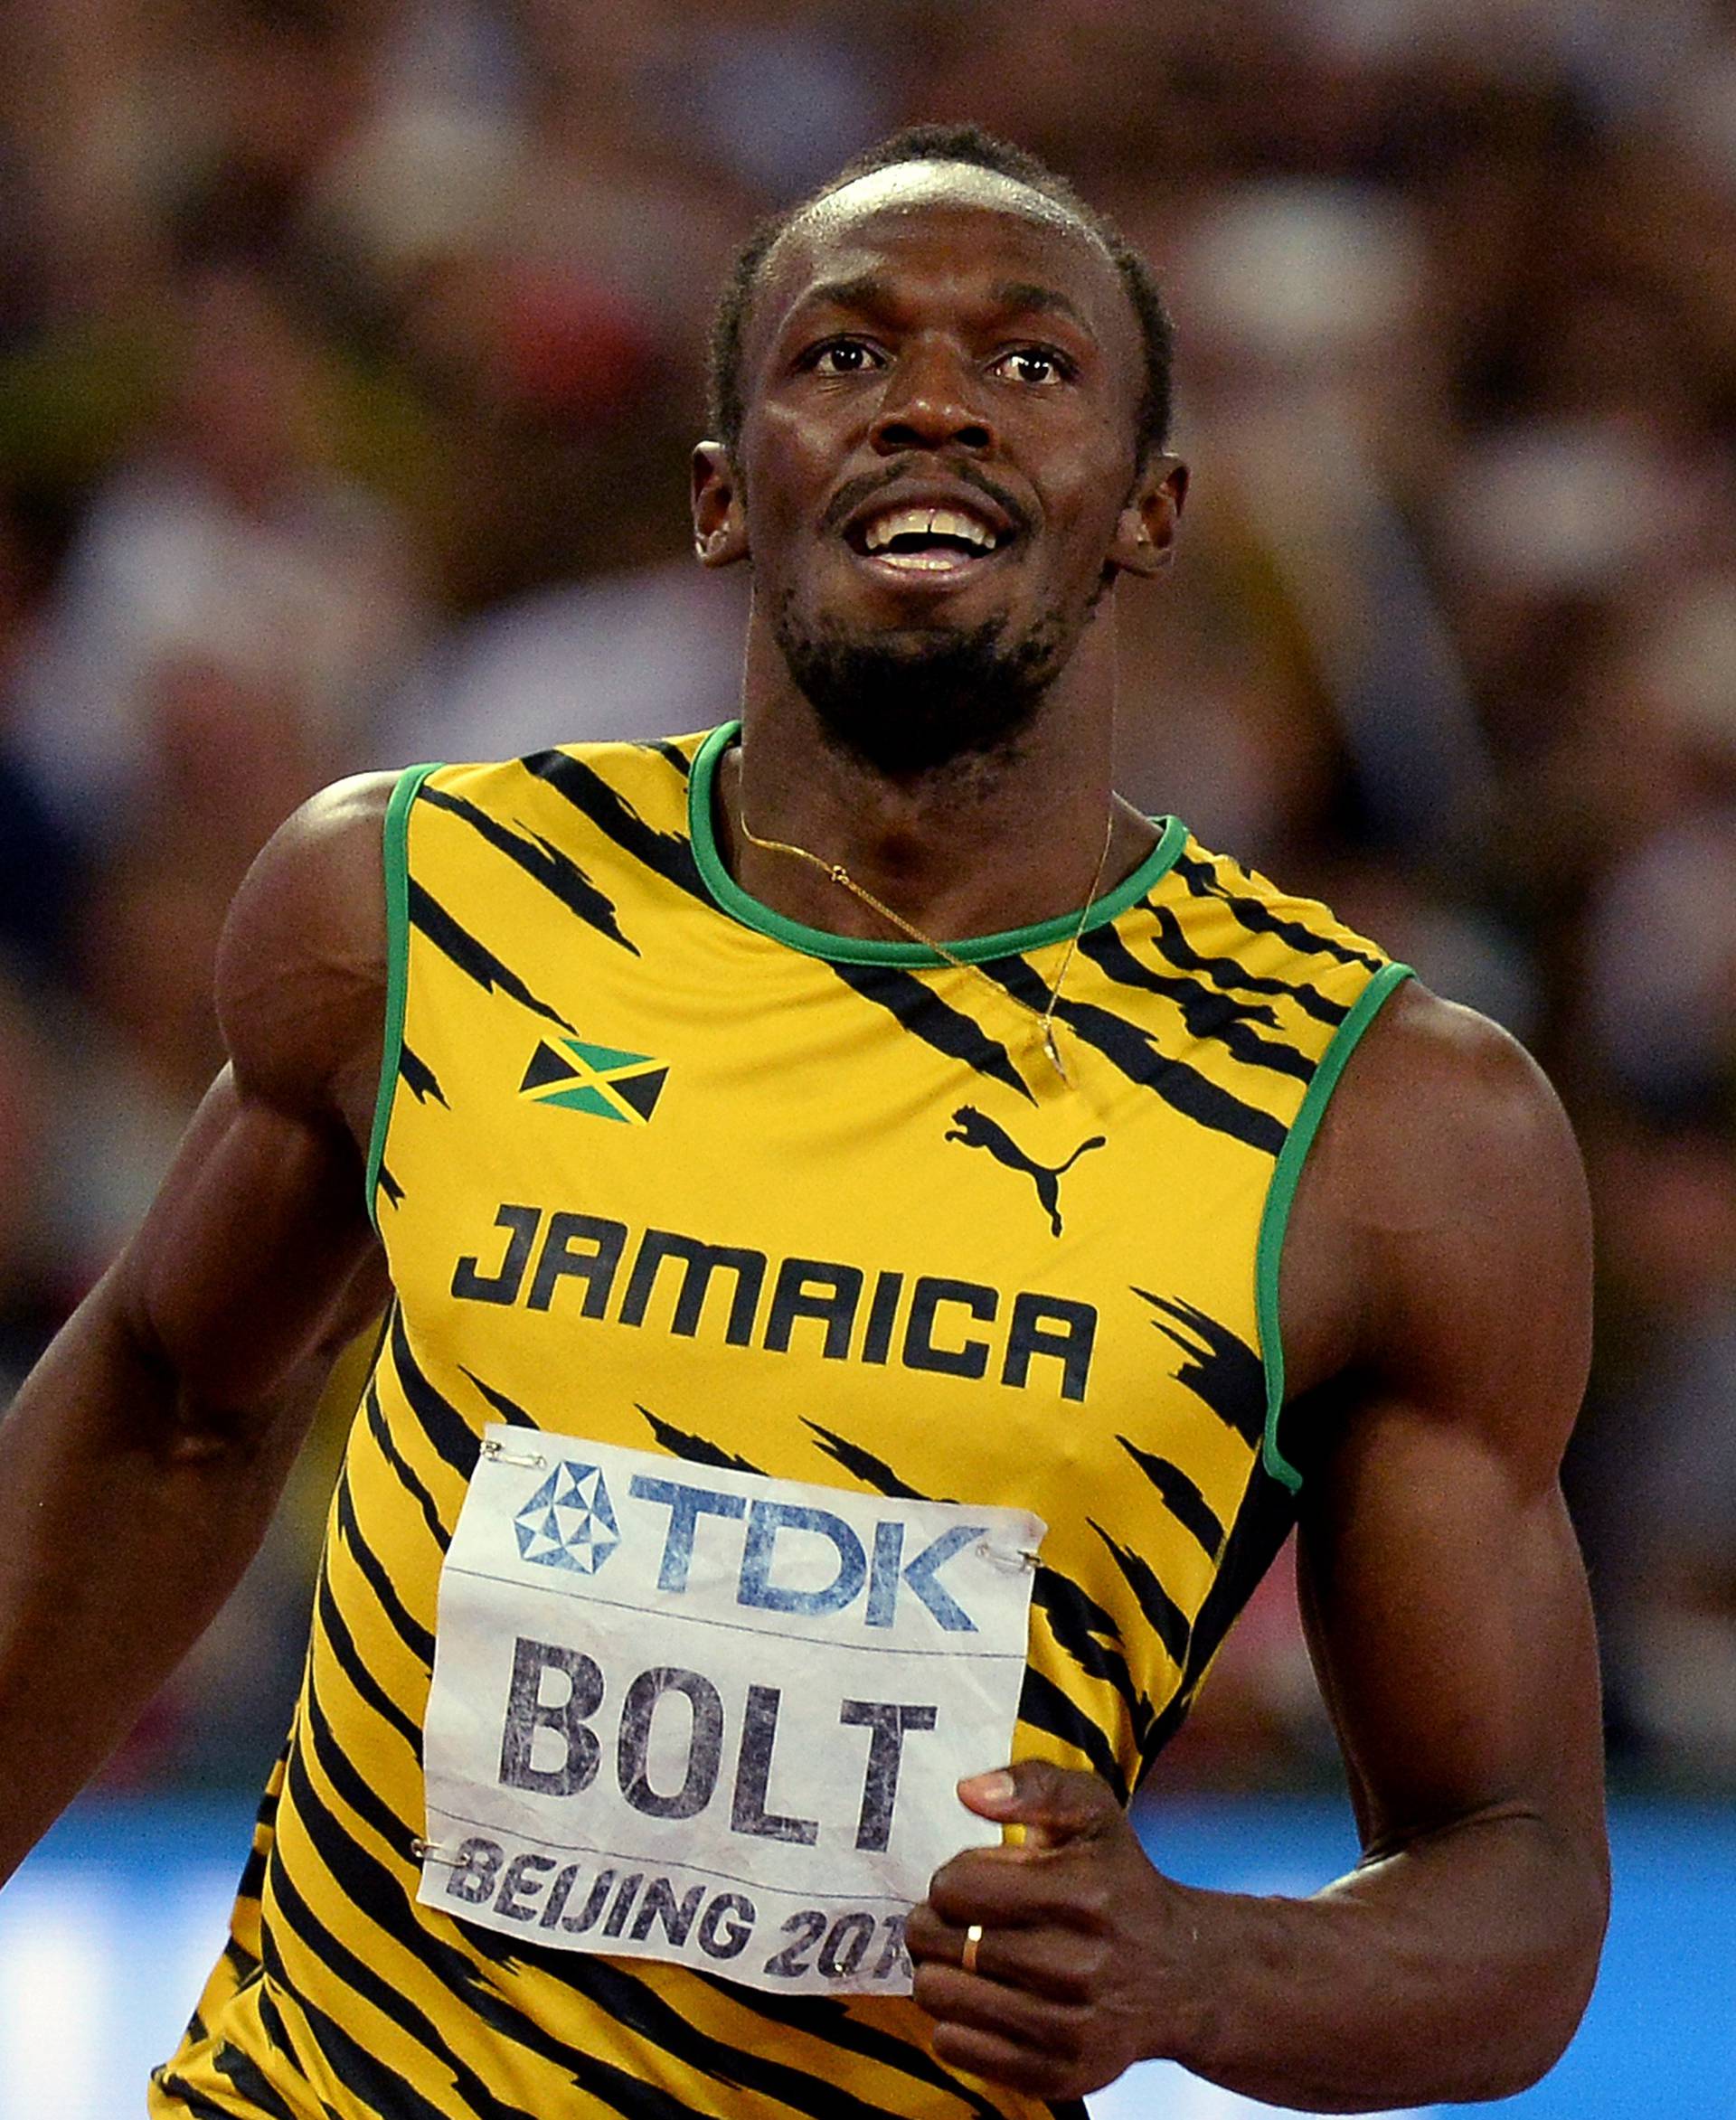 Bolt pobjedom otvorio sezonu: Osjećam da sam "zahrđao"...